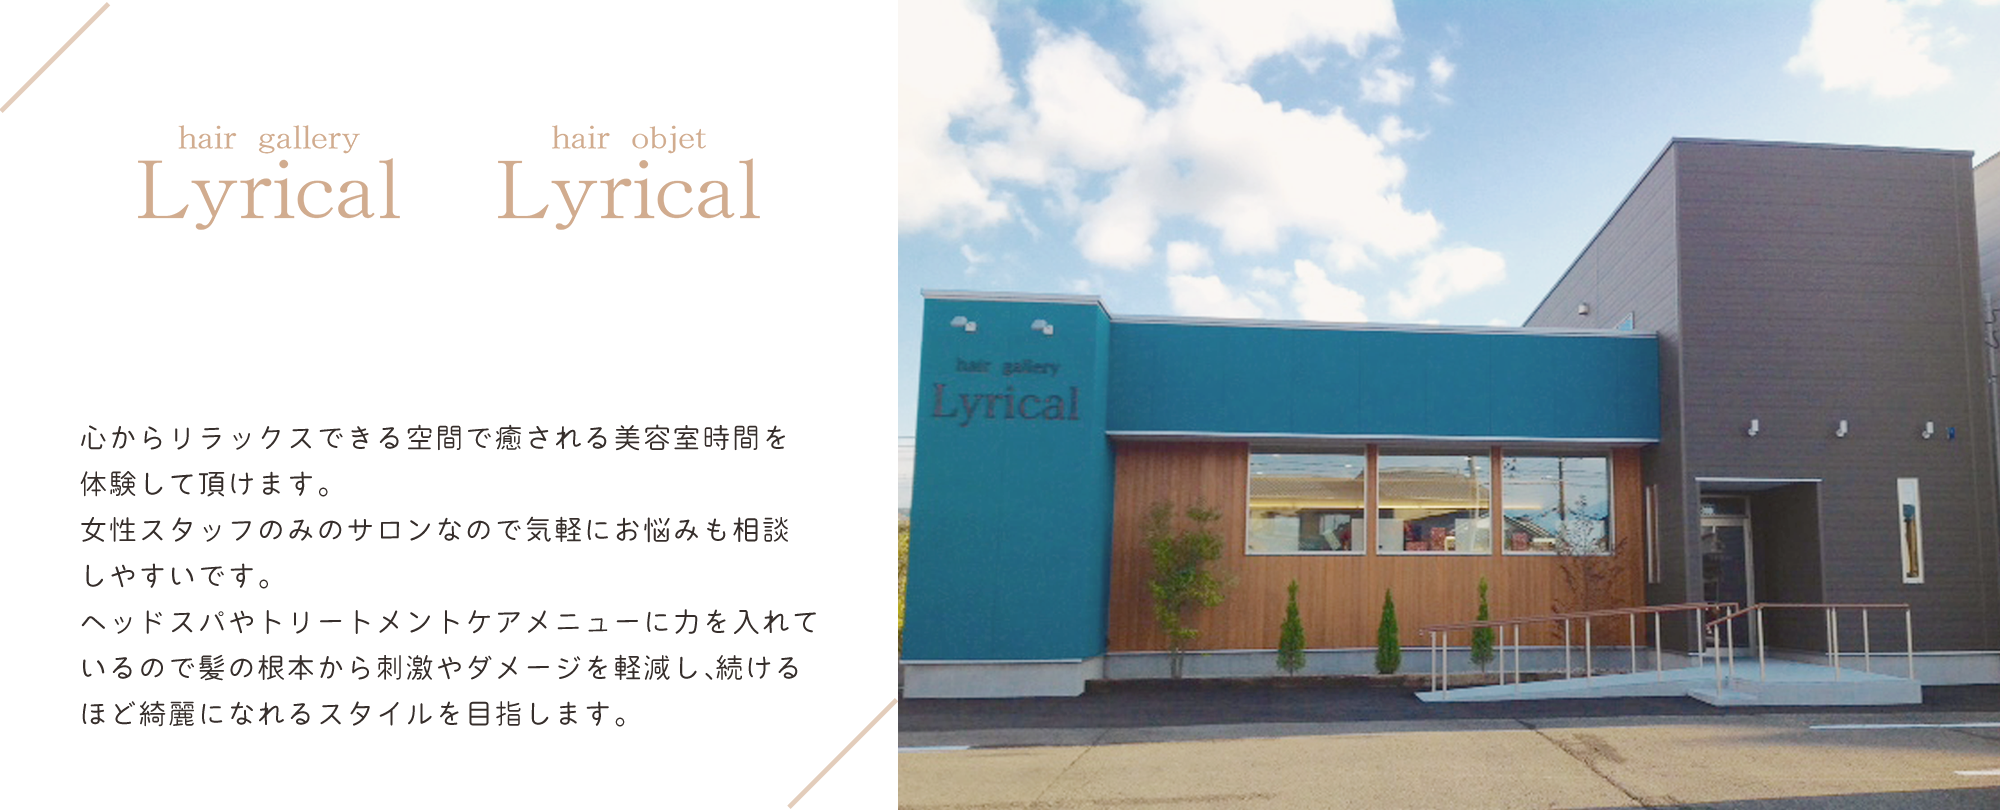 Lyrical ギャラリー店・Lyrical オブジェ店